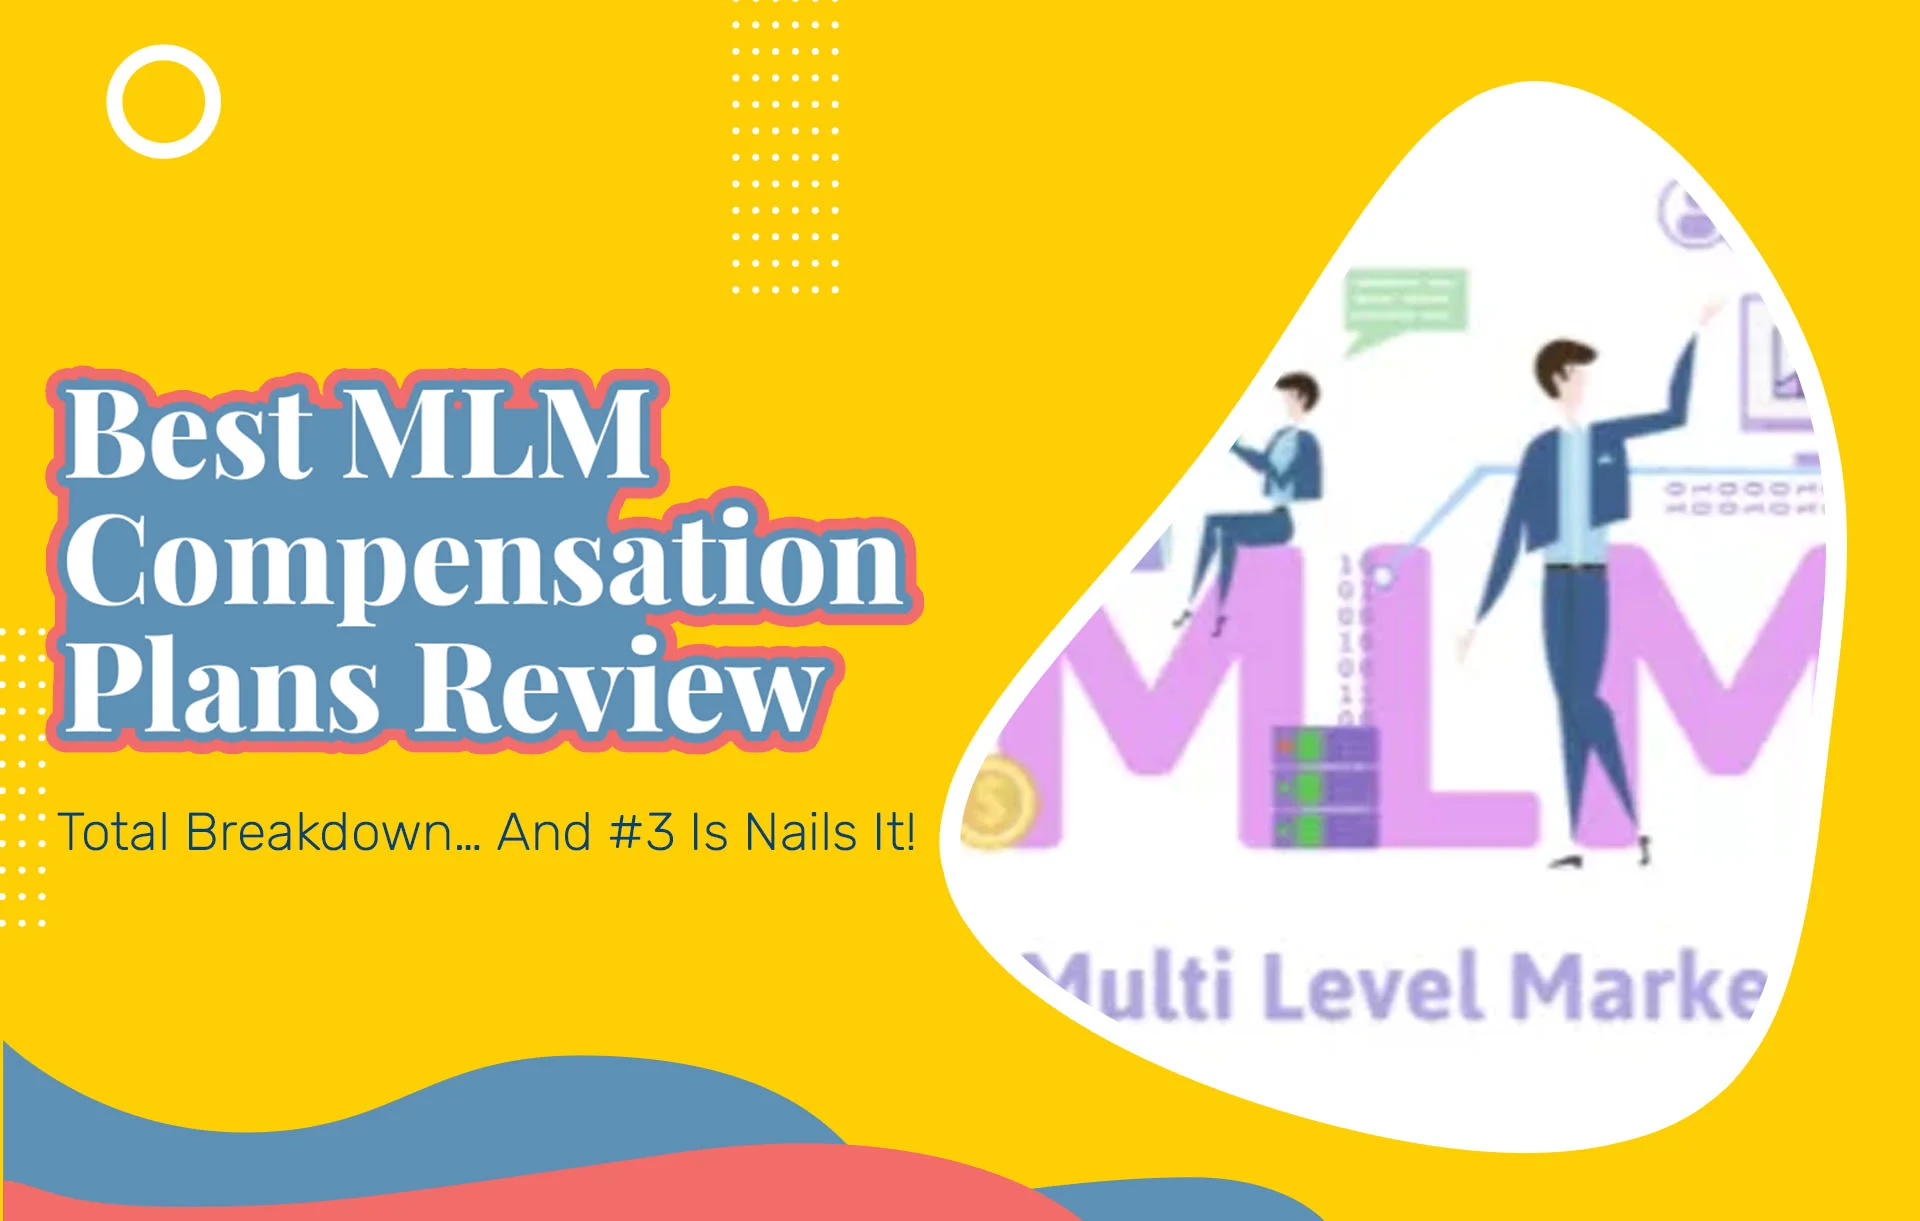 Best MLM Compensation Plans Review